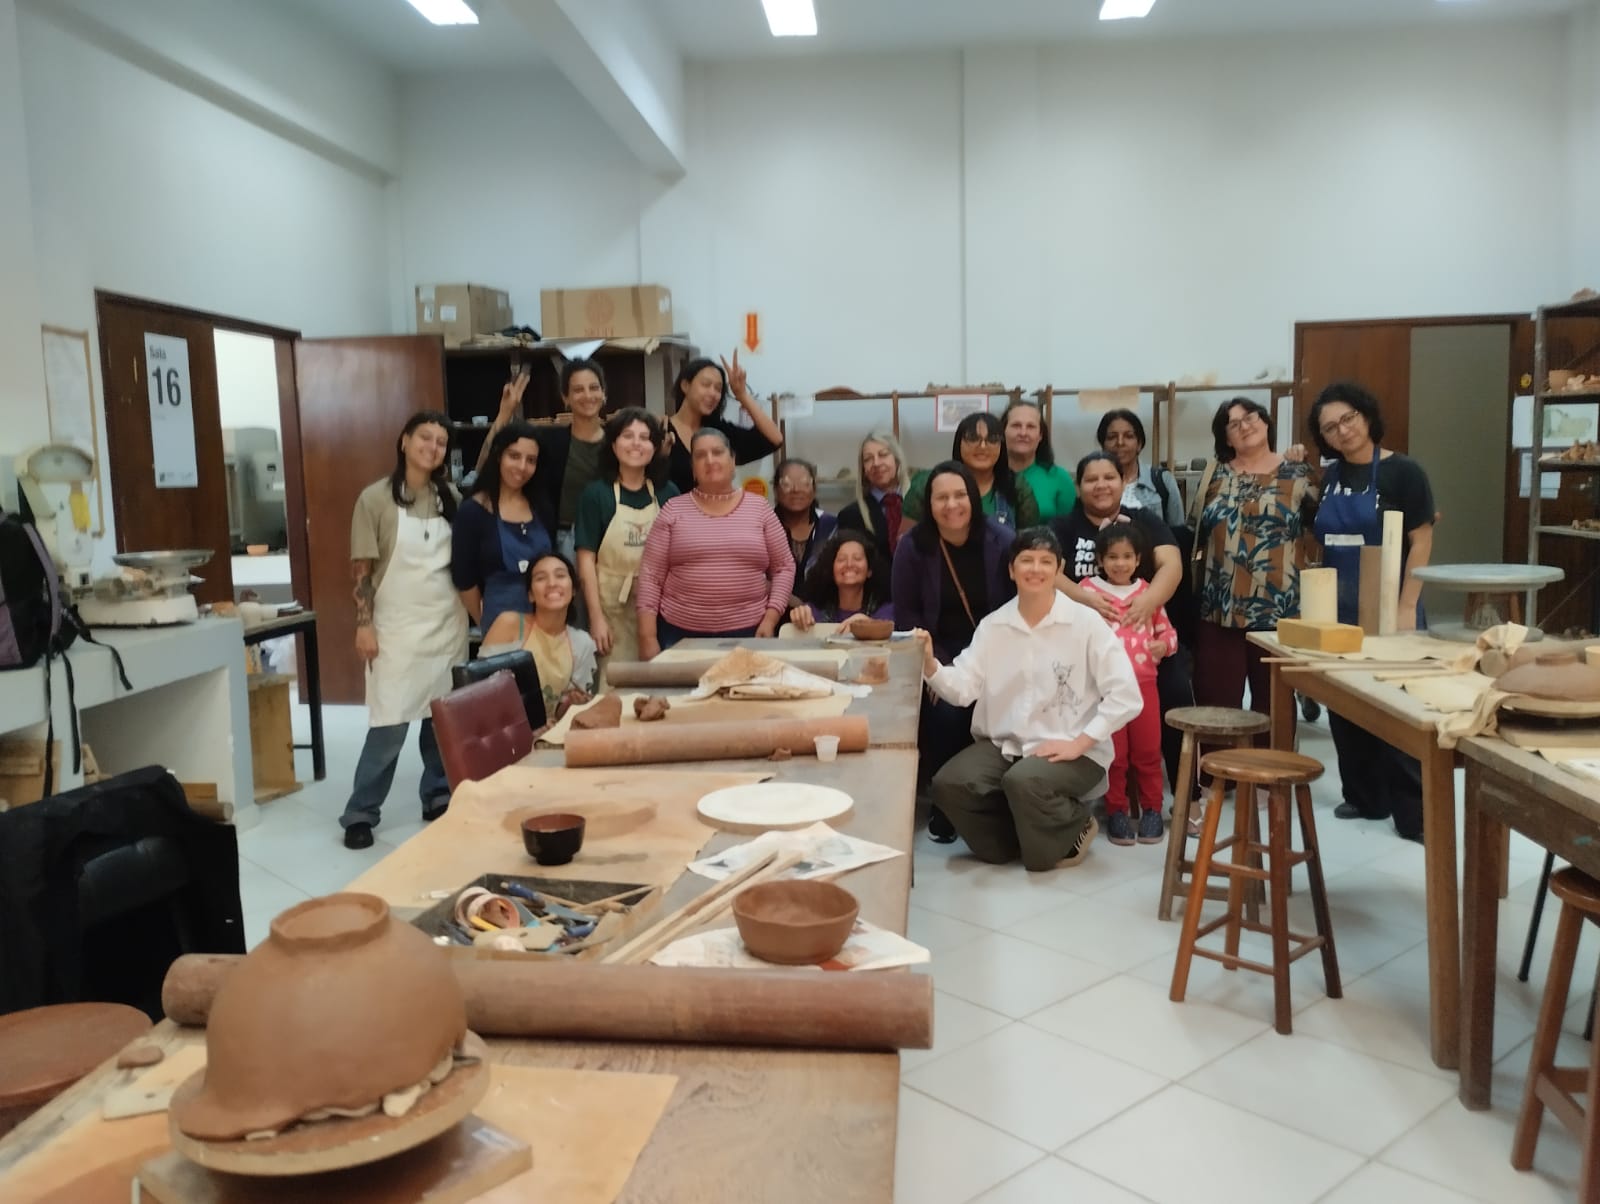 <h4>Projeto: <br />
<br />
<strong>Ammo - Oficina de Cerâmica com a Associação de Mulheres do Monte Cristo</strong><br />
<em>Programa de extensão realizado pelo: NupeArt Promove, Ceart Colaborativo e Laboratório Interdisciplinar de Formação de Educadores (LIFE).<br />
Coordenação da Oficina: Professora Drª. Luzia Renata Yamazaki</em></h4>
